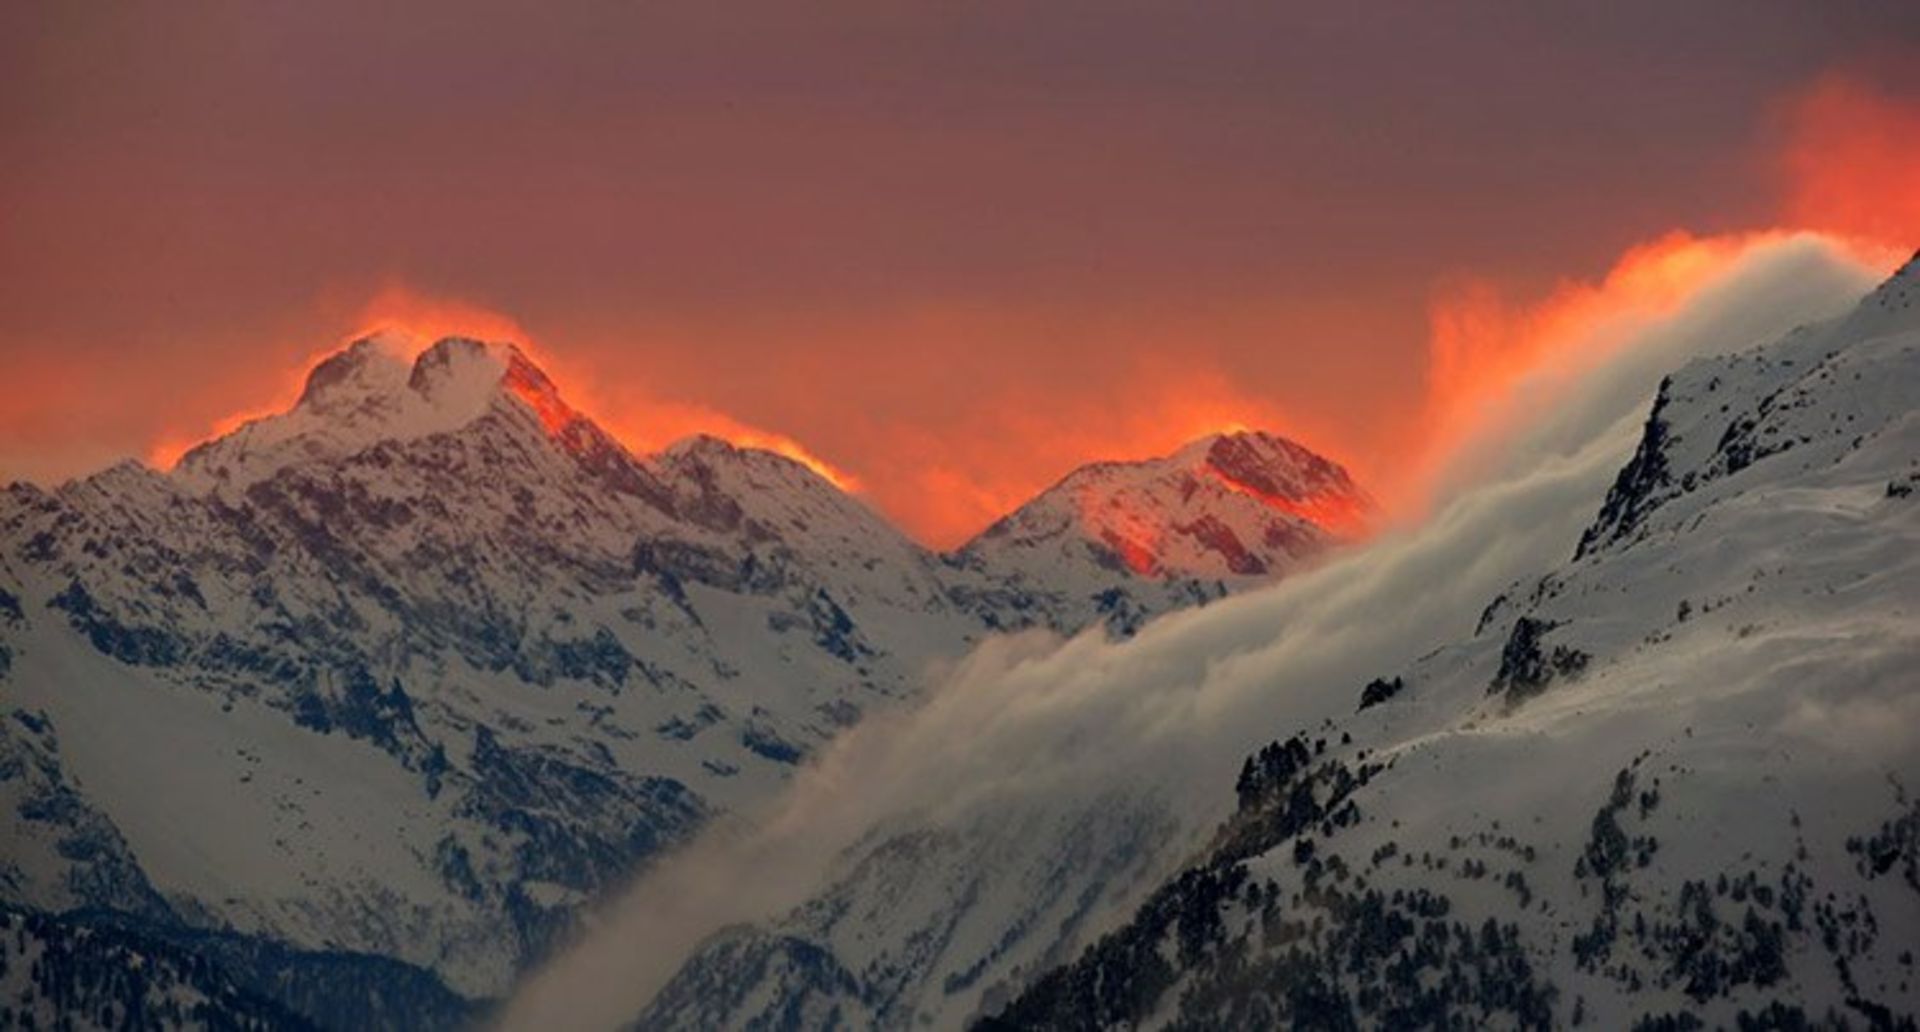 17 the sunset illuminates the peaks of the mountains near the swiss mountain resort of st moritz s bfa76